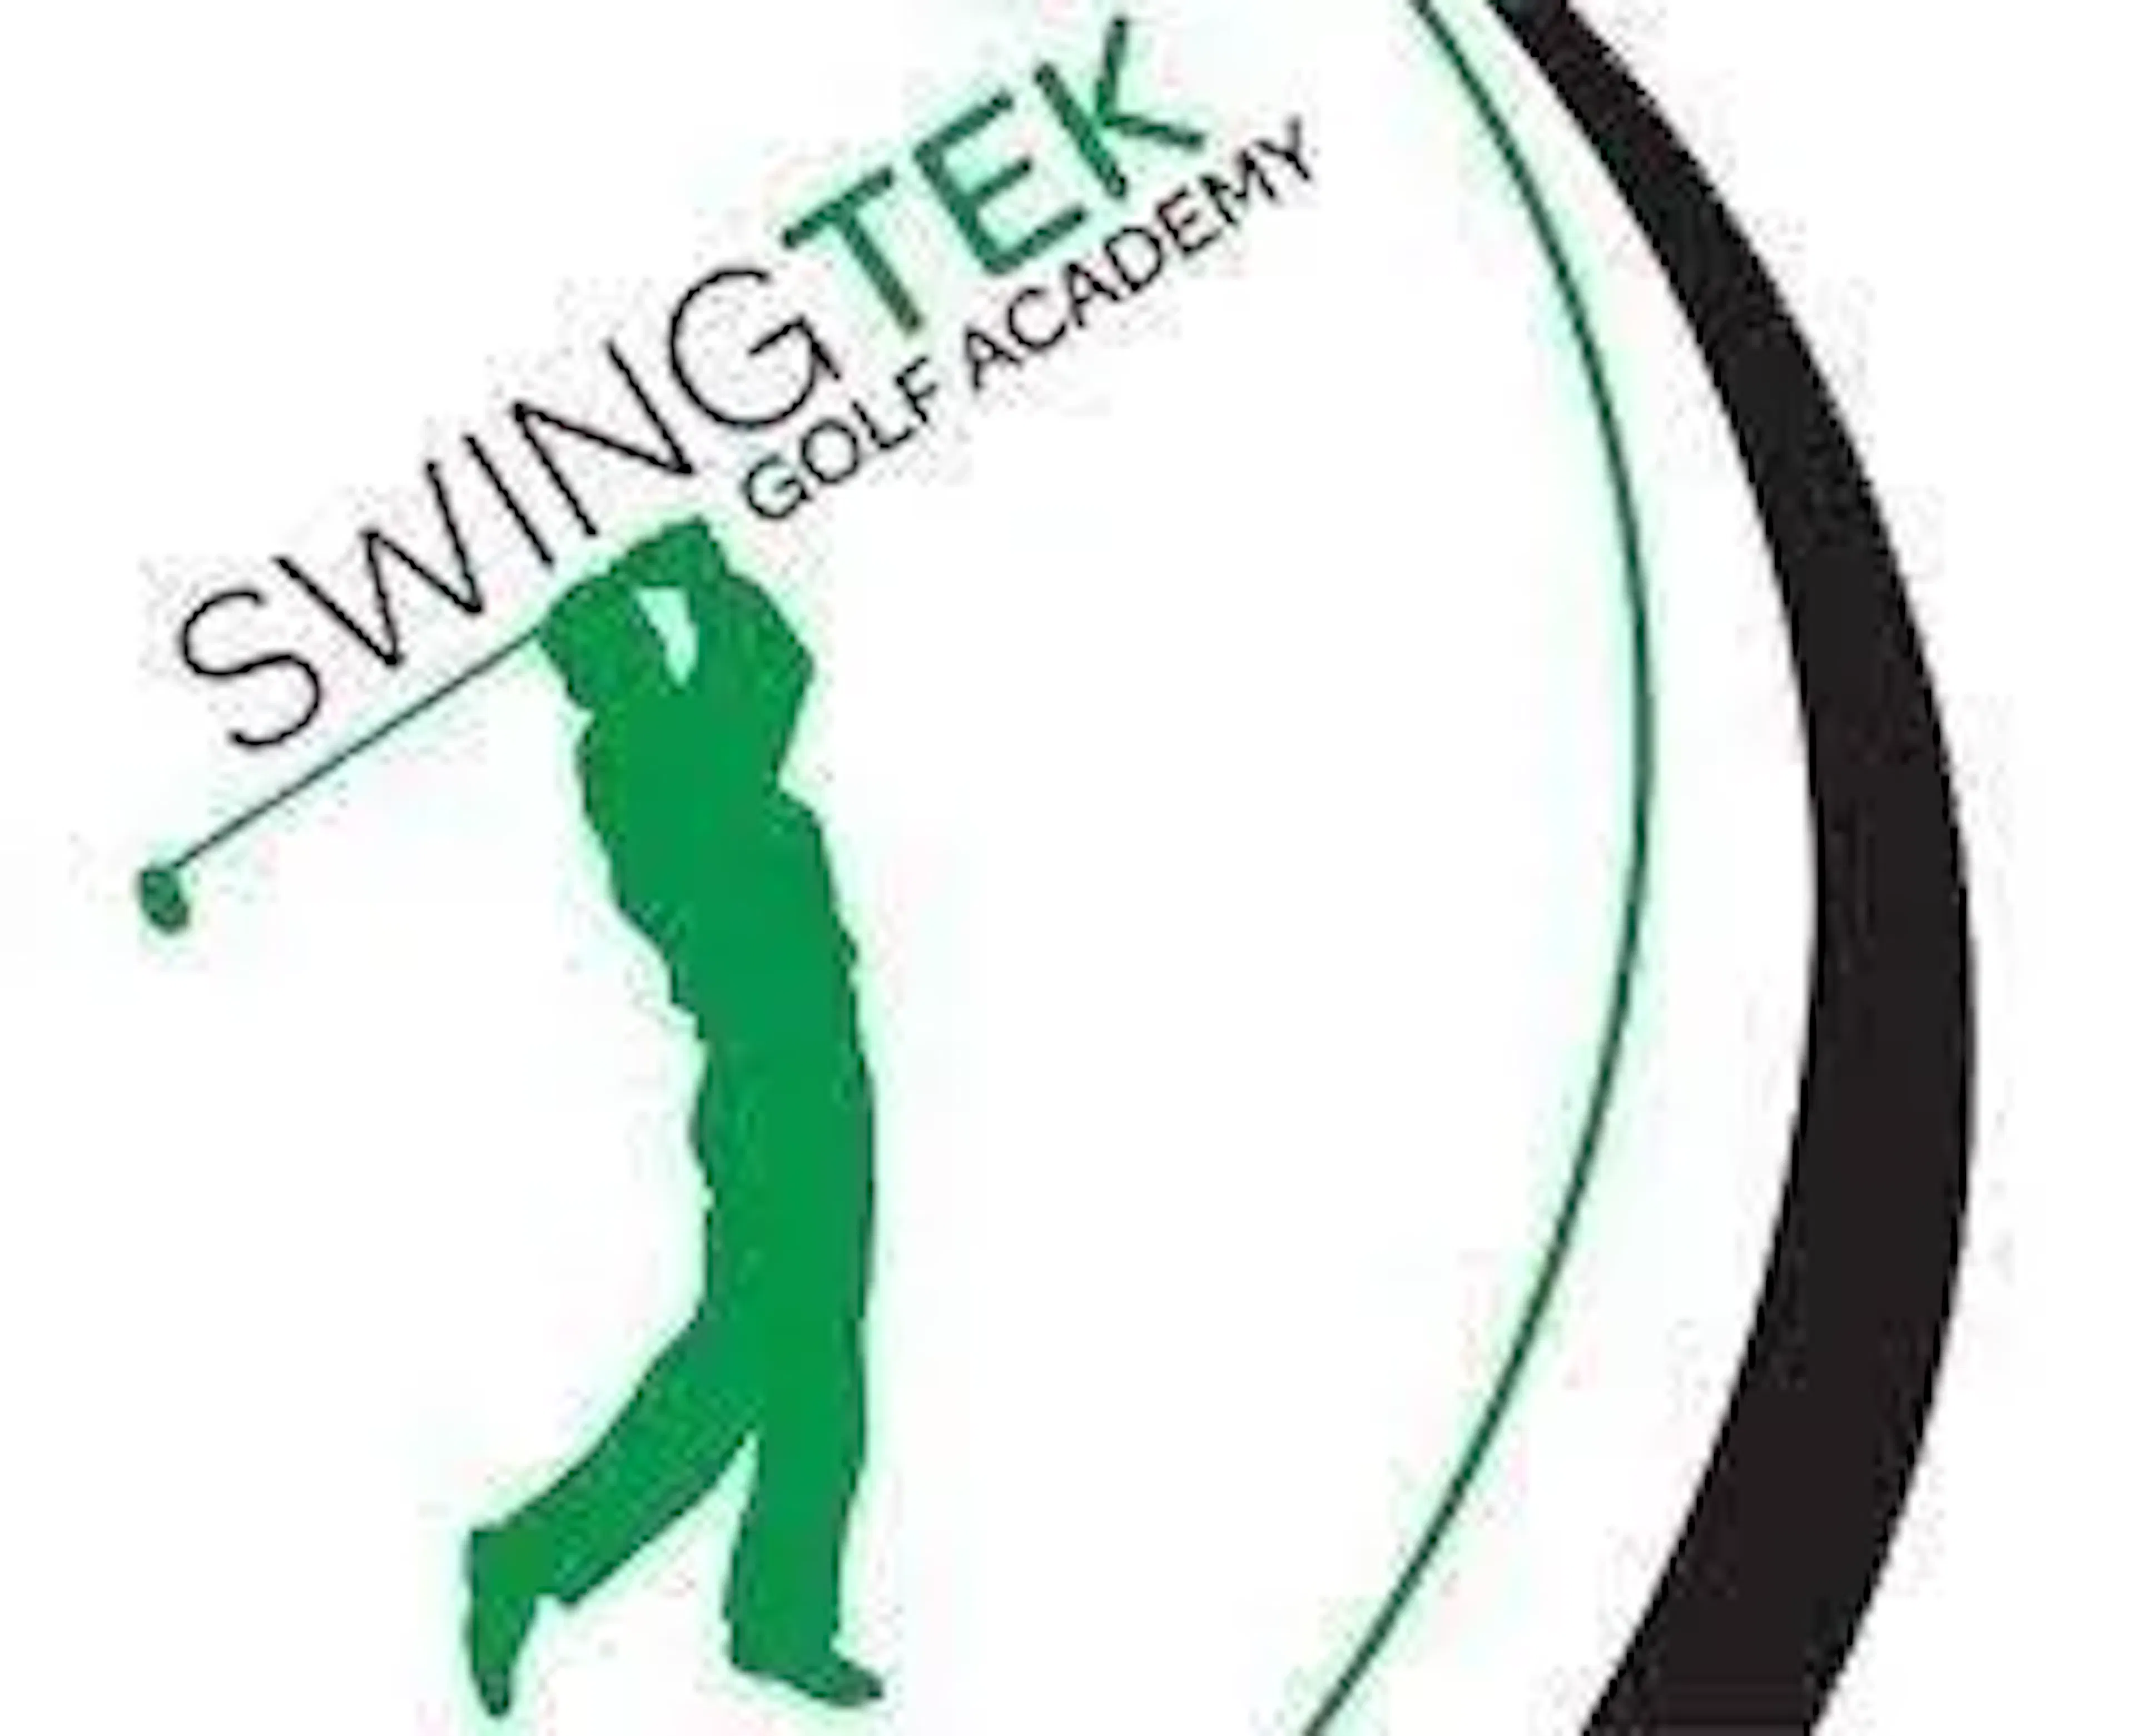 swingtek golf academy